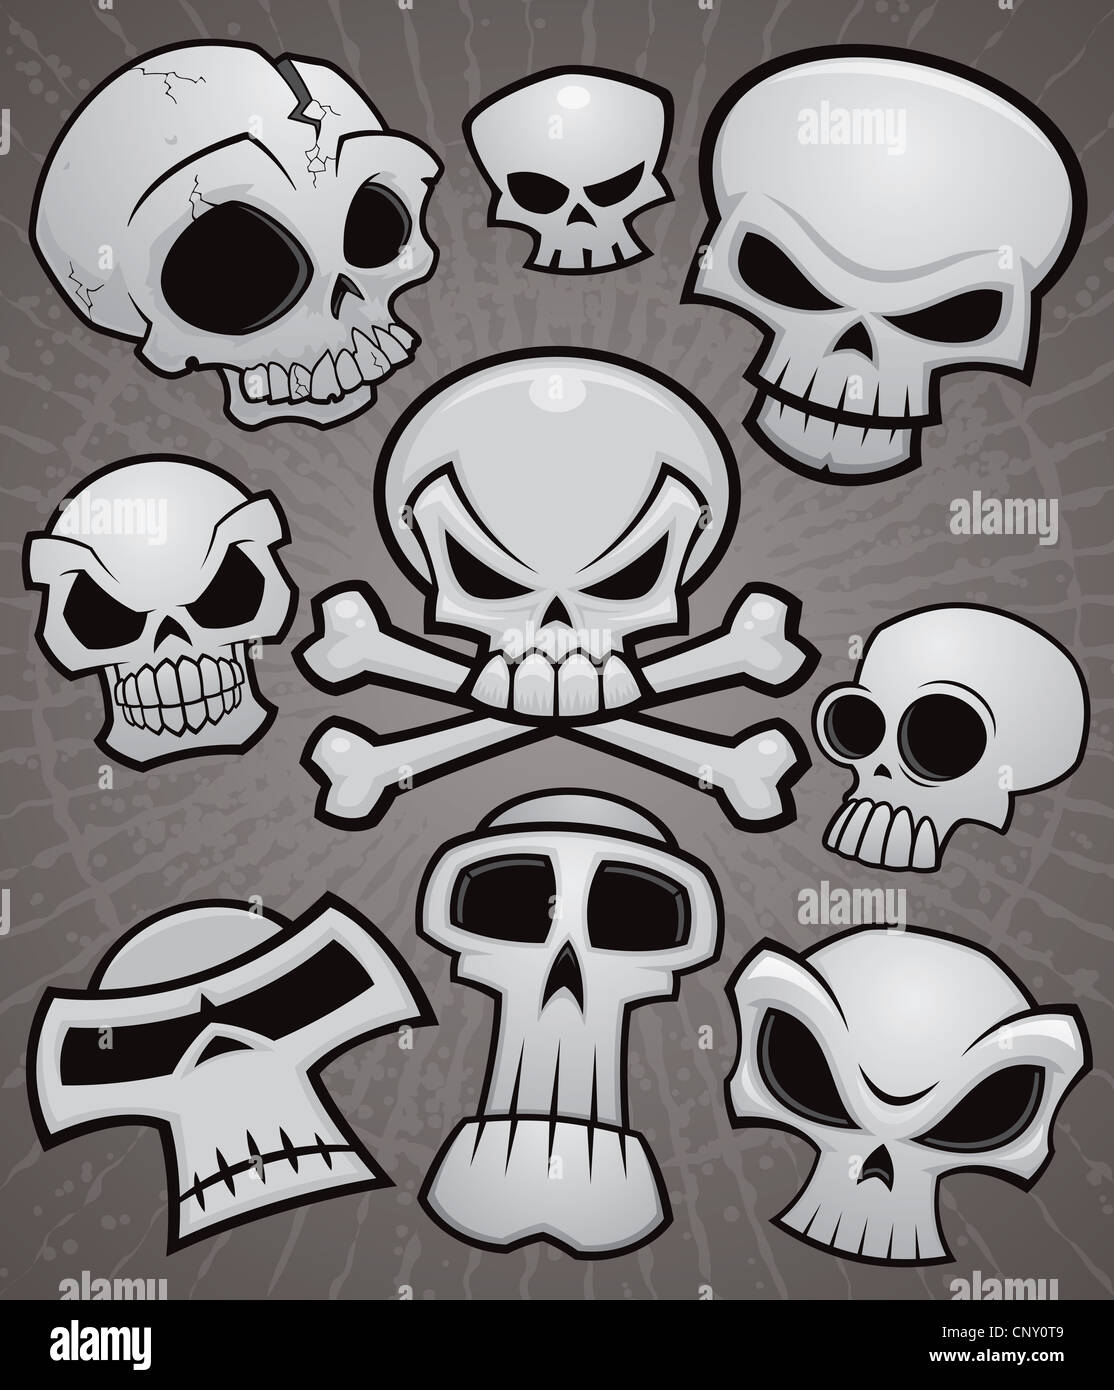 Une collection de dessins vectoriels crânes dans divers styles. Banque D'Images